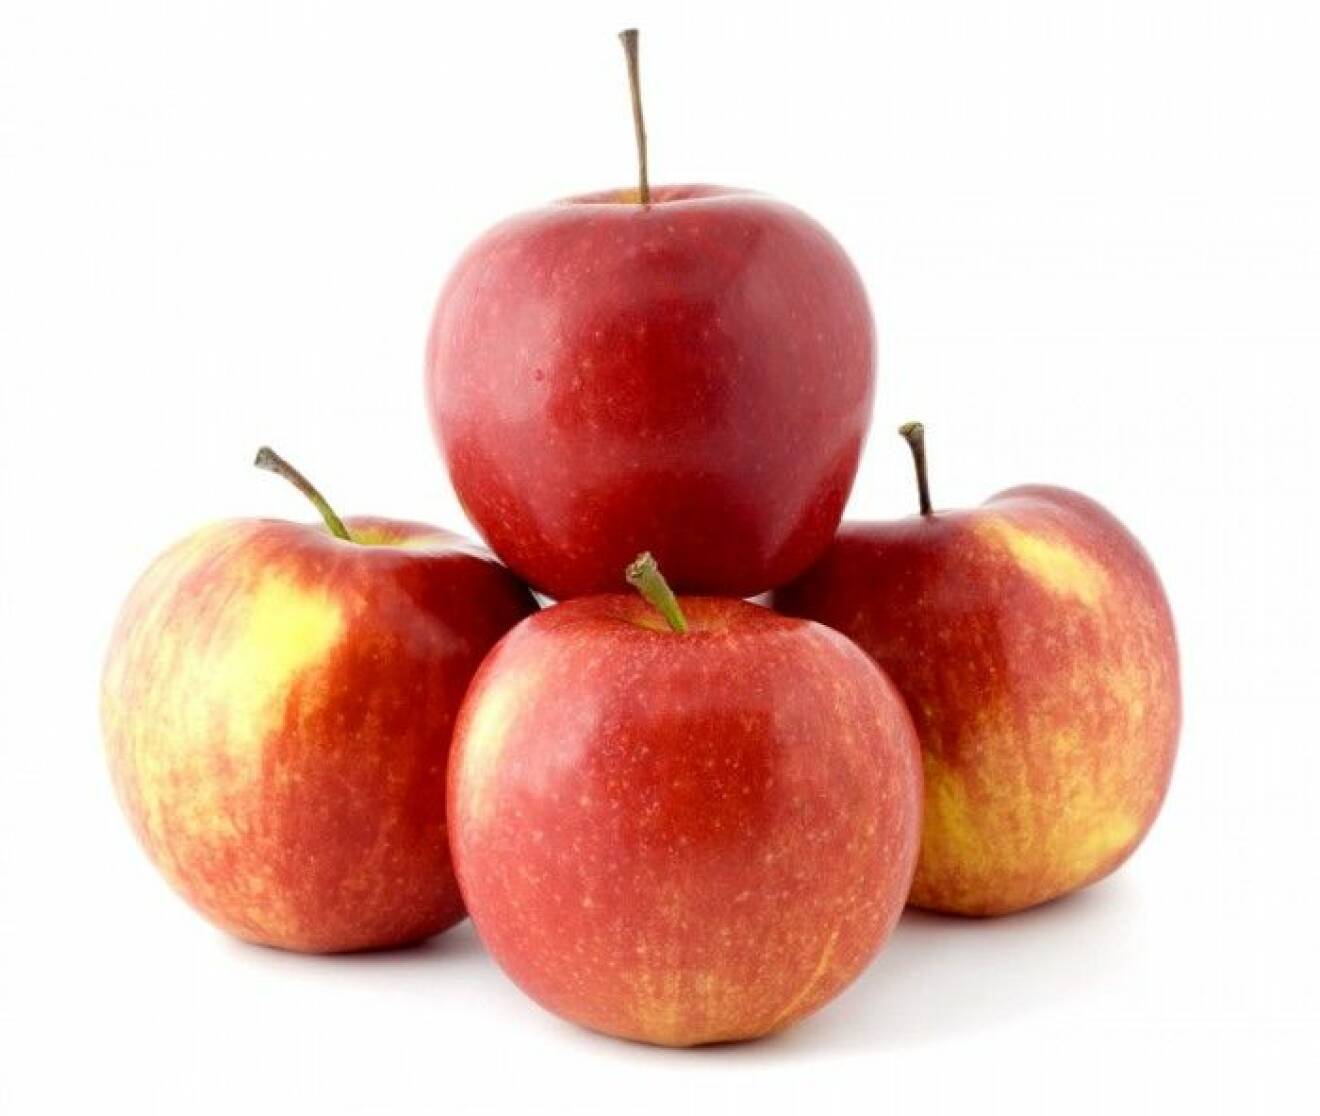 Äpple. Ett äpple före sängdags sägs ge god sömn. Äppelfrukten i sig är lugnande, men det är först och främst kokt som äpplet både är laxerande och sömngivande. Äpplen är bra för matsmältningen och ett utmärkt blodrenande medel som hjälper kroppen att befria sig från alla gifter. I skalet finns mycket av äpplets värdefulla fibrer som håller magen i gång och sänker kolesterolet. 